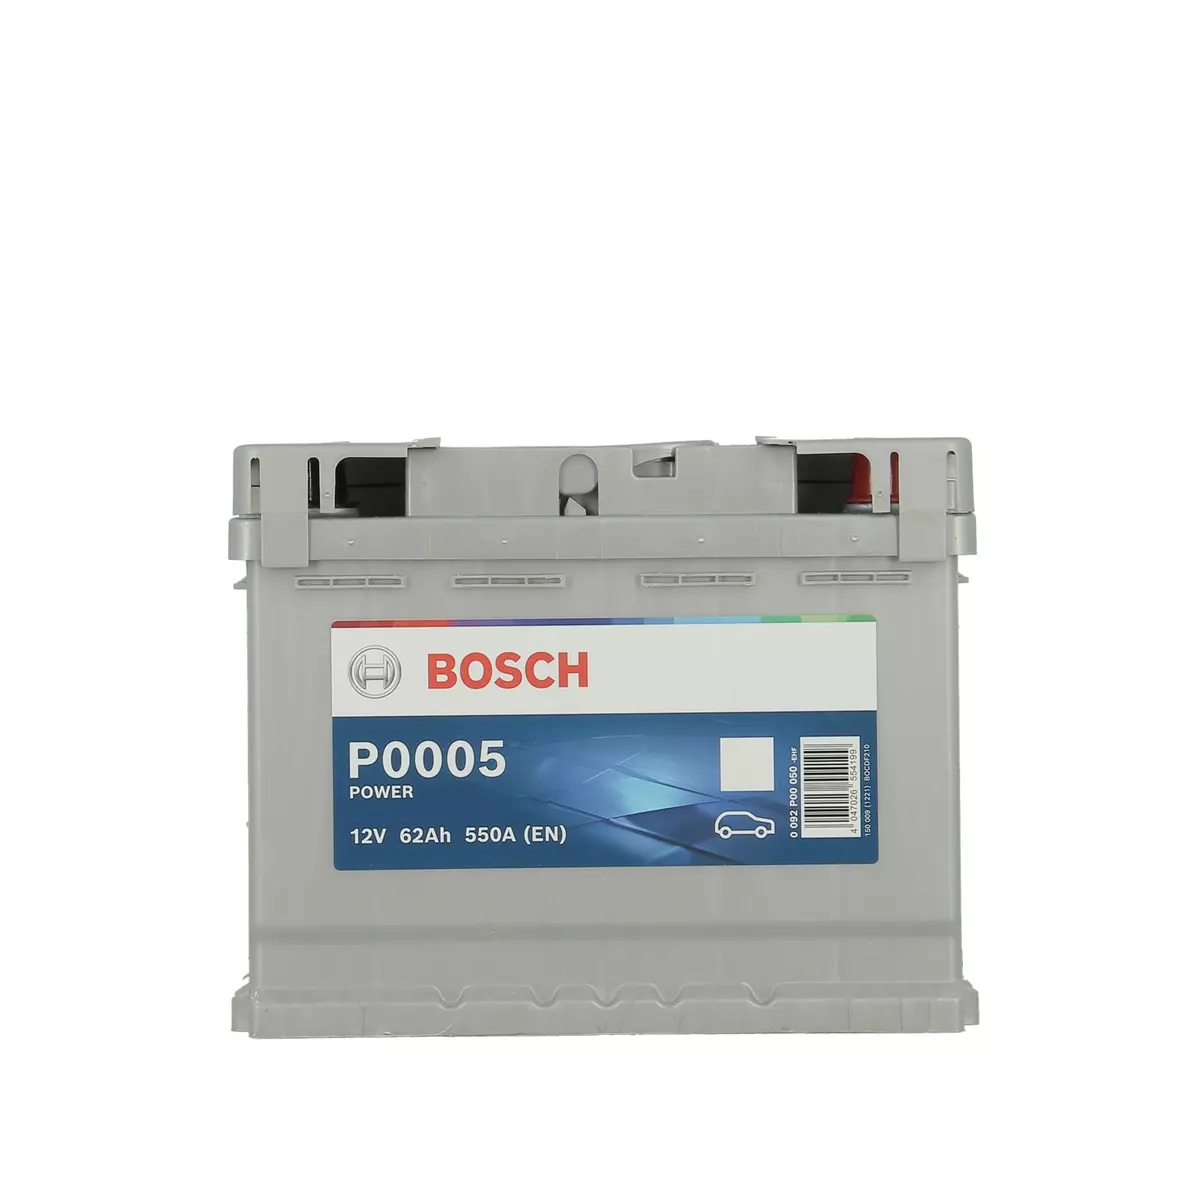 BOSCH Batterie pour voiture 62AH 550A P0005